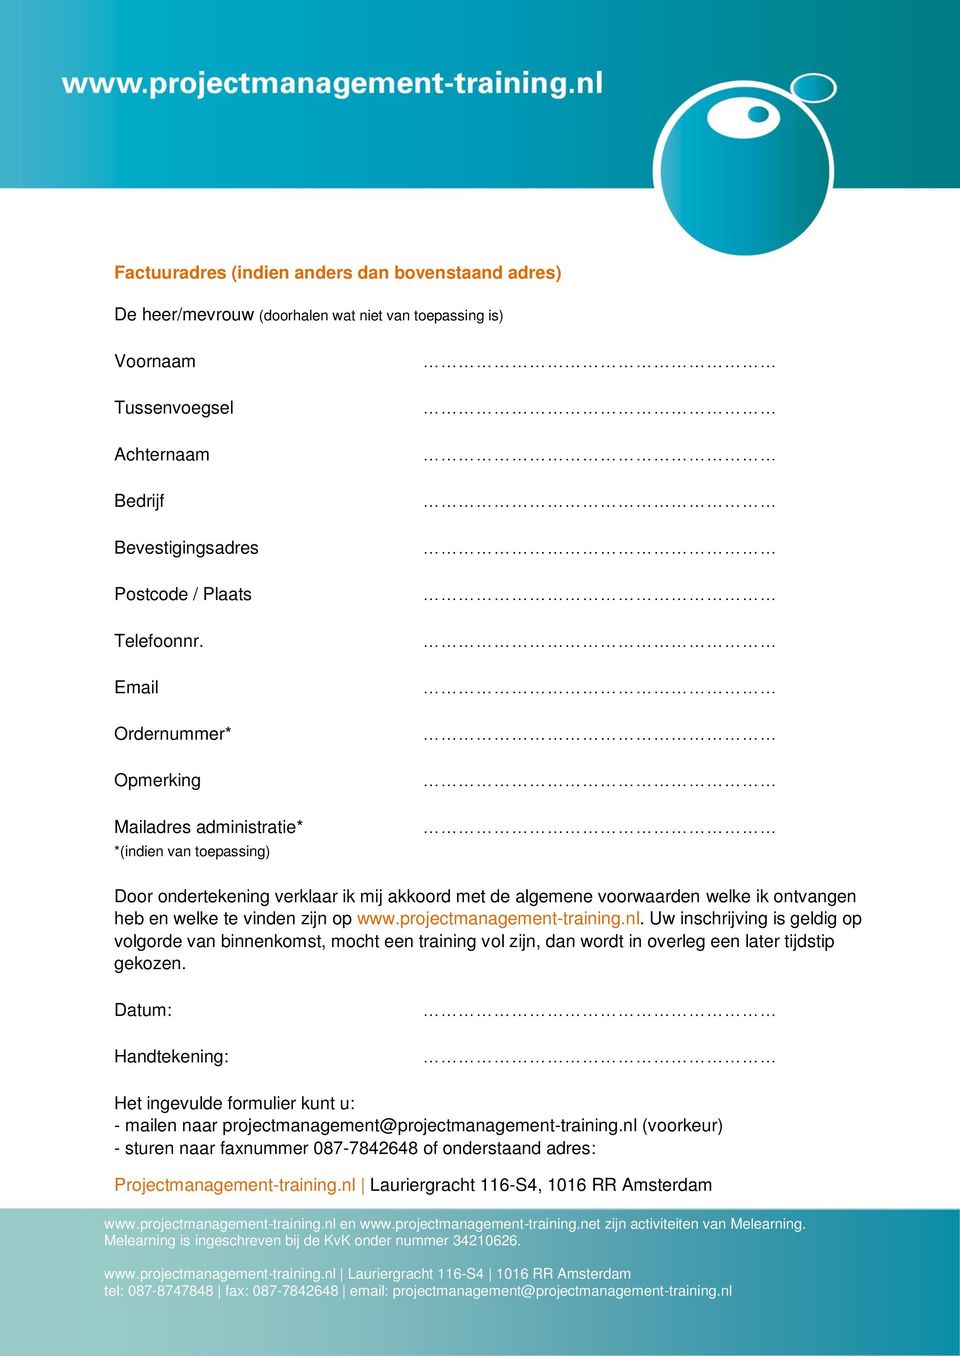 www.projectmanagement-training.nl. Uw inschrijving is geldig op volgorde van binnenkomst, mocht een training vol zijn, dan wordt in overleg een later tijdstip gekozen.